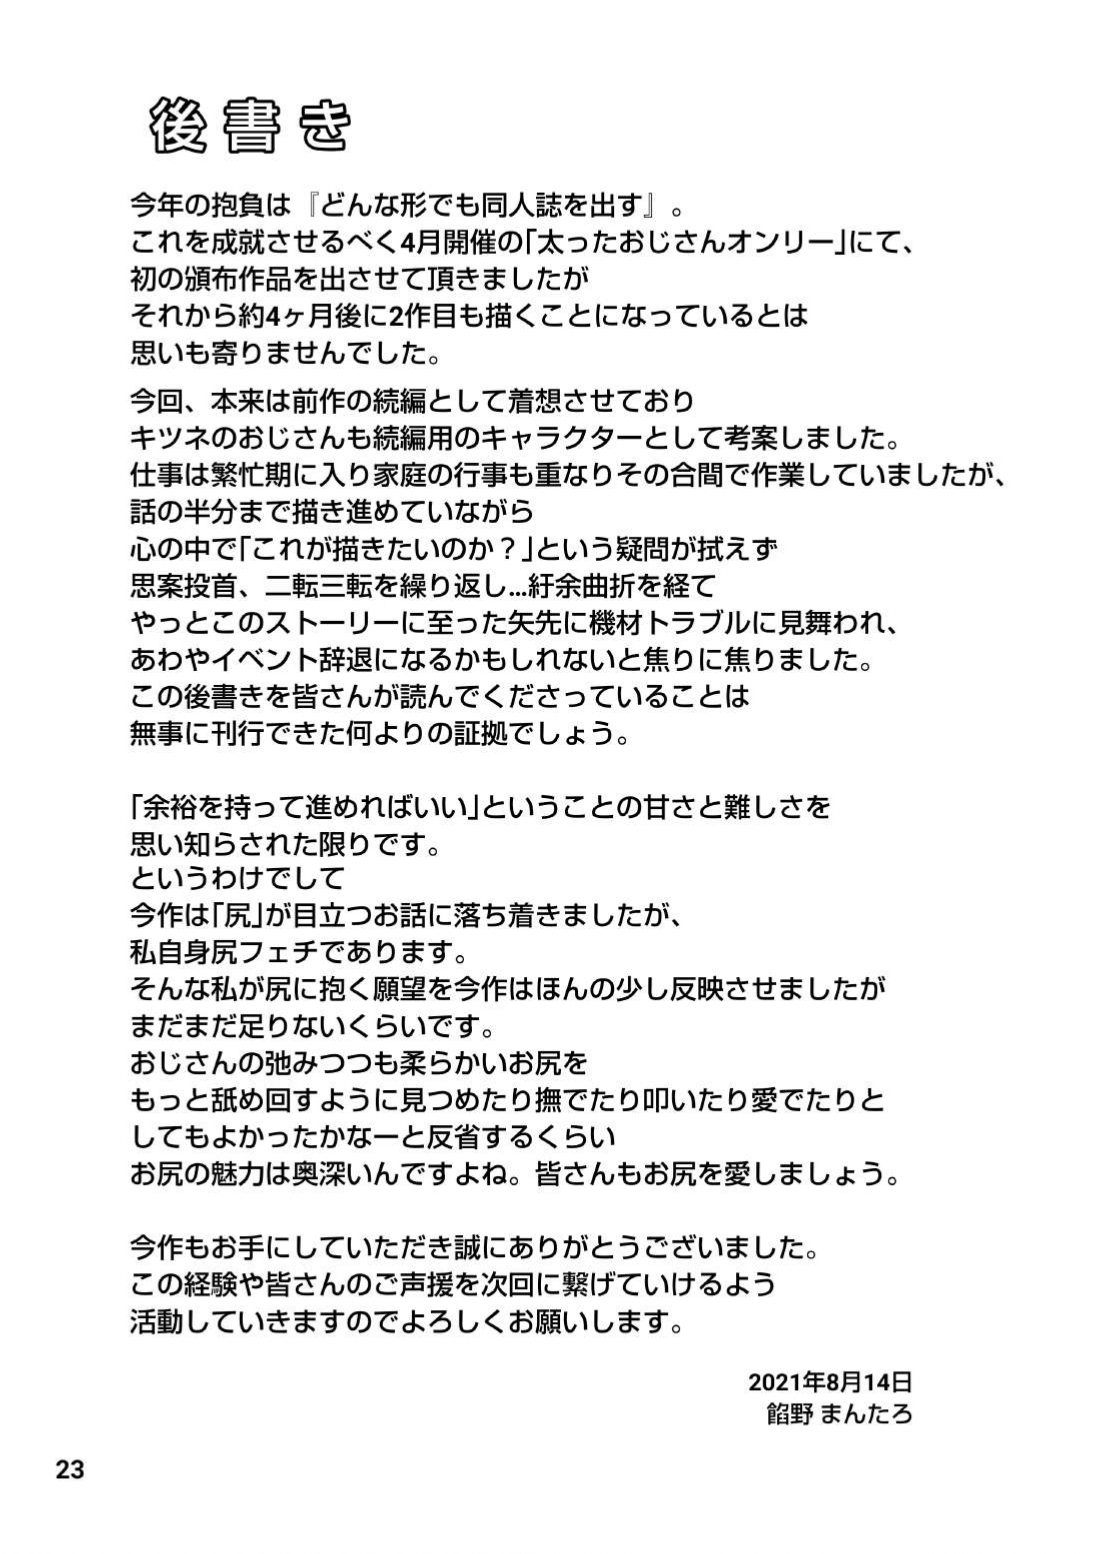 [Anman Shop (An no Mantaro)] -Shiri Shirabe- #Kougetsu Otsubi, Oji-san Keikan ni Utagawareta Oji-san 2-hiki ga "Shintai Kensa" de Shiri o Hojirareru. [Digital] 23